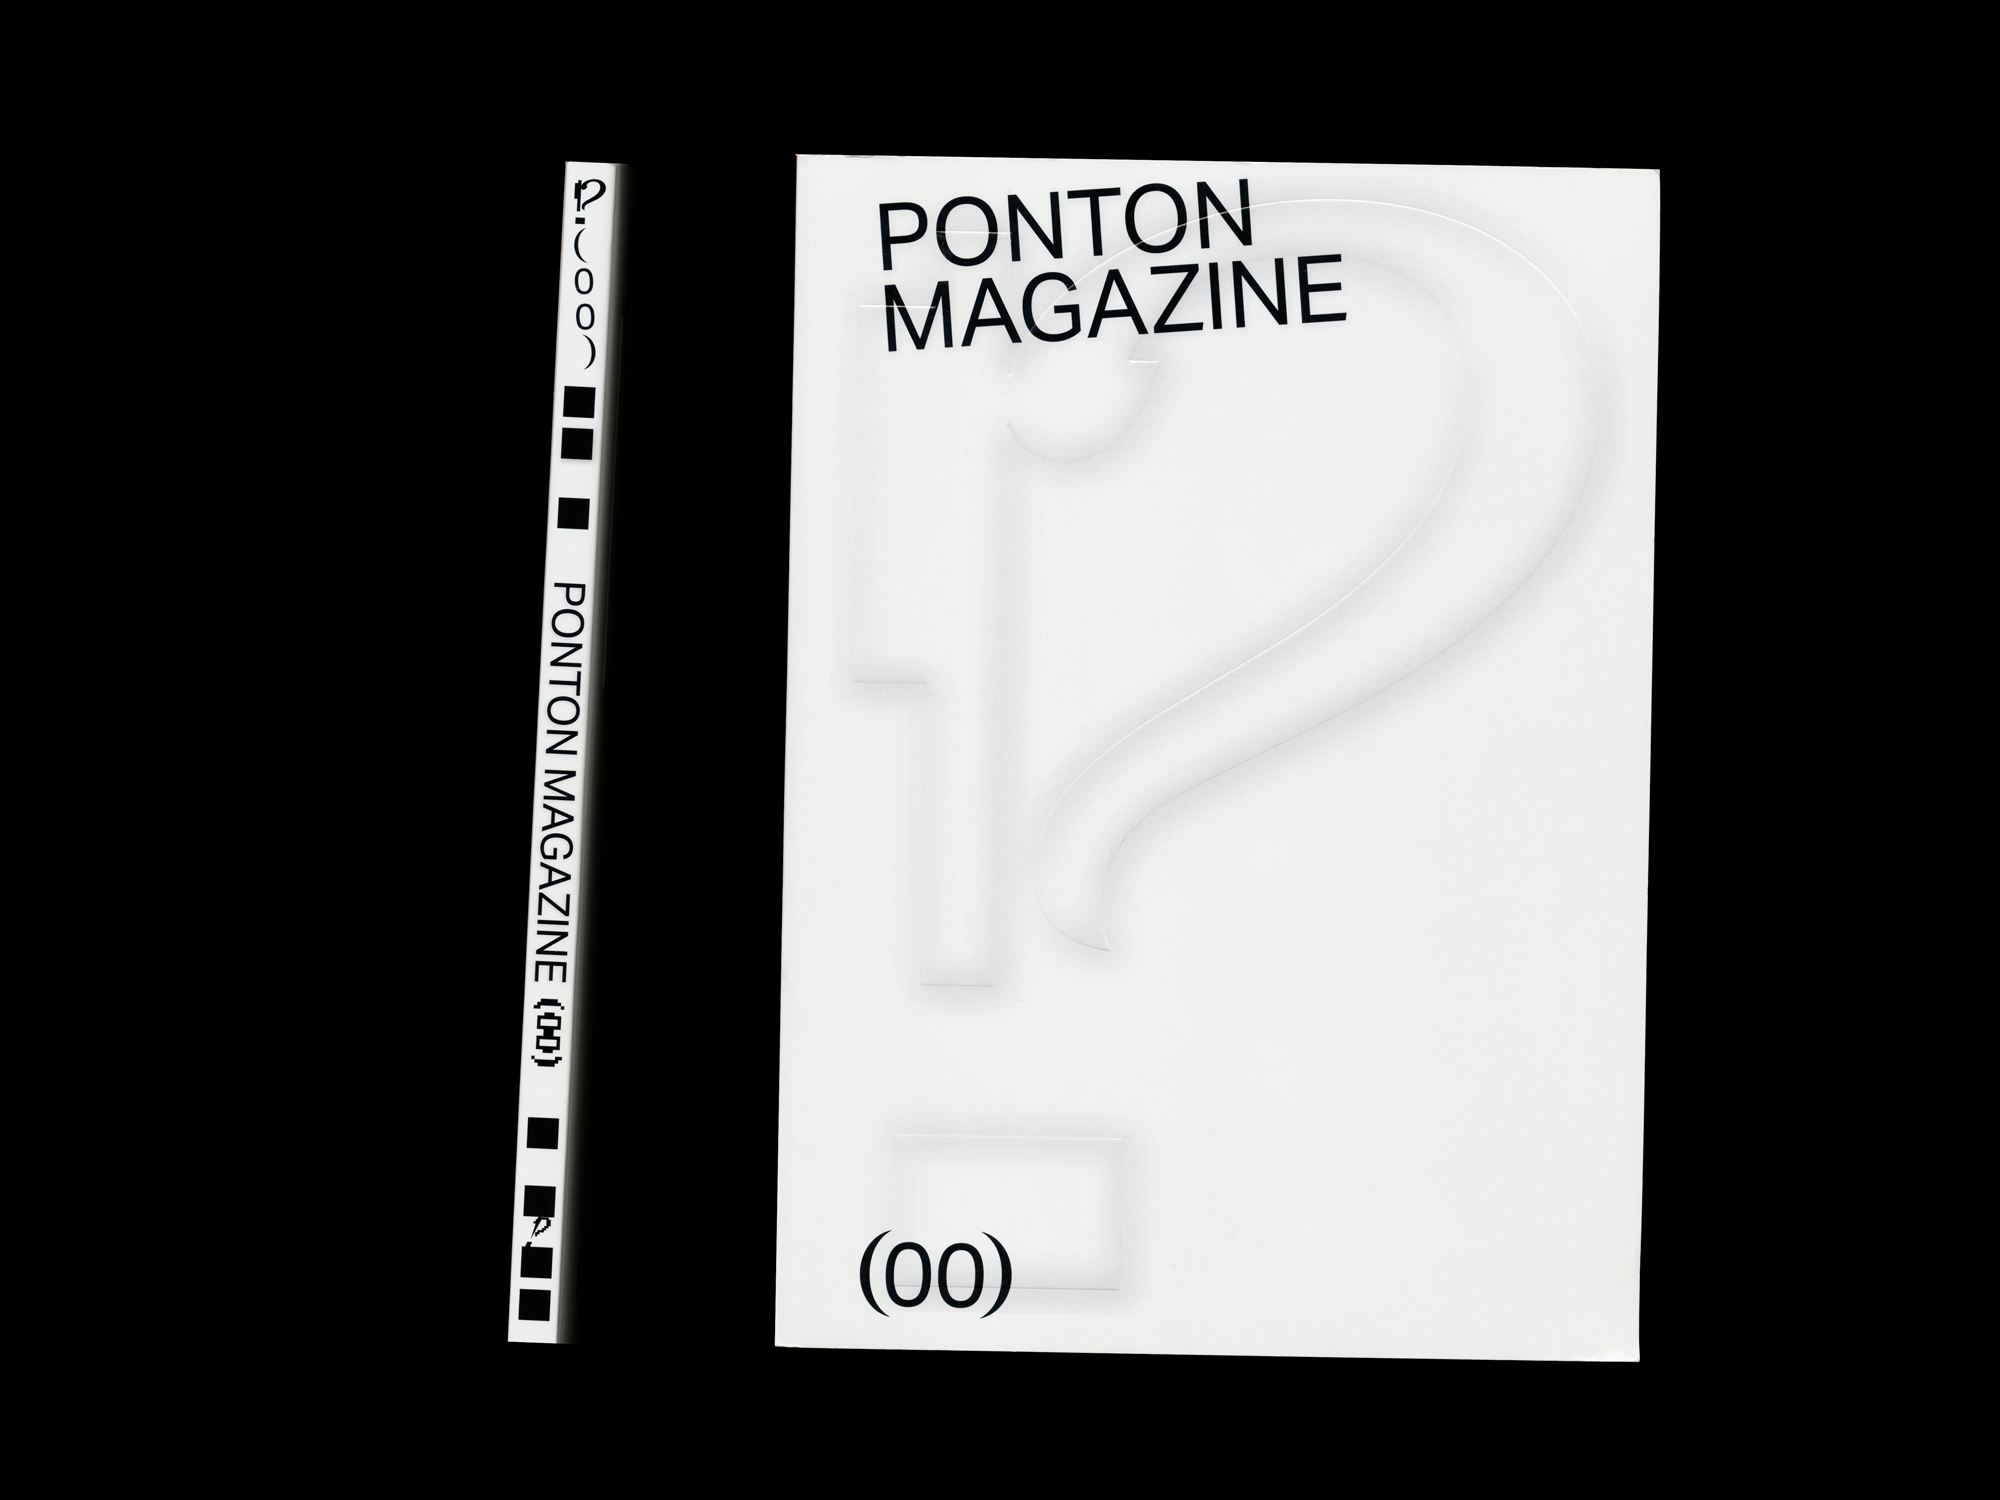 Studio Studio Ponton magazine cover spine embossing